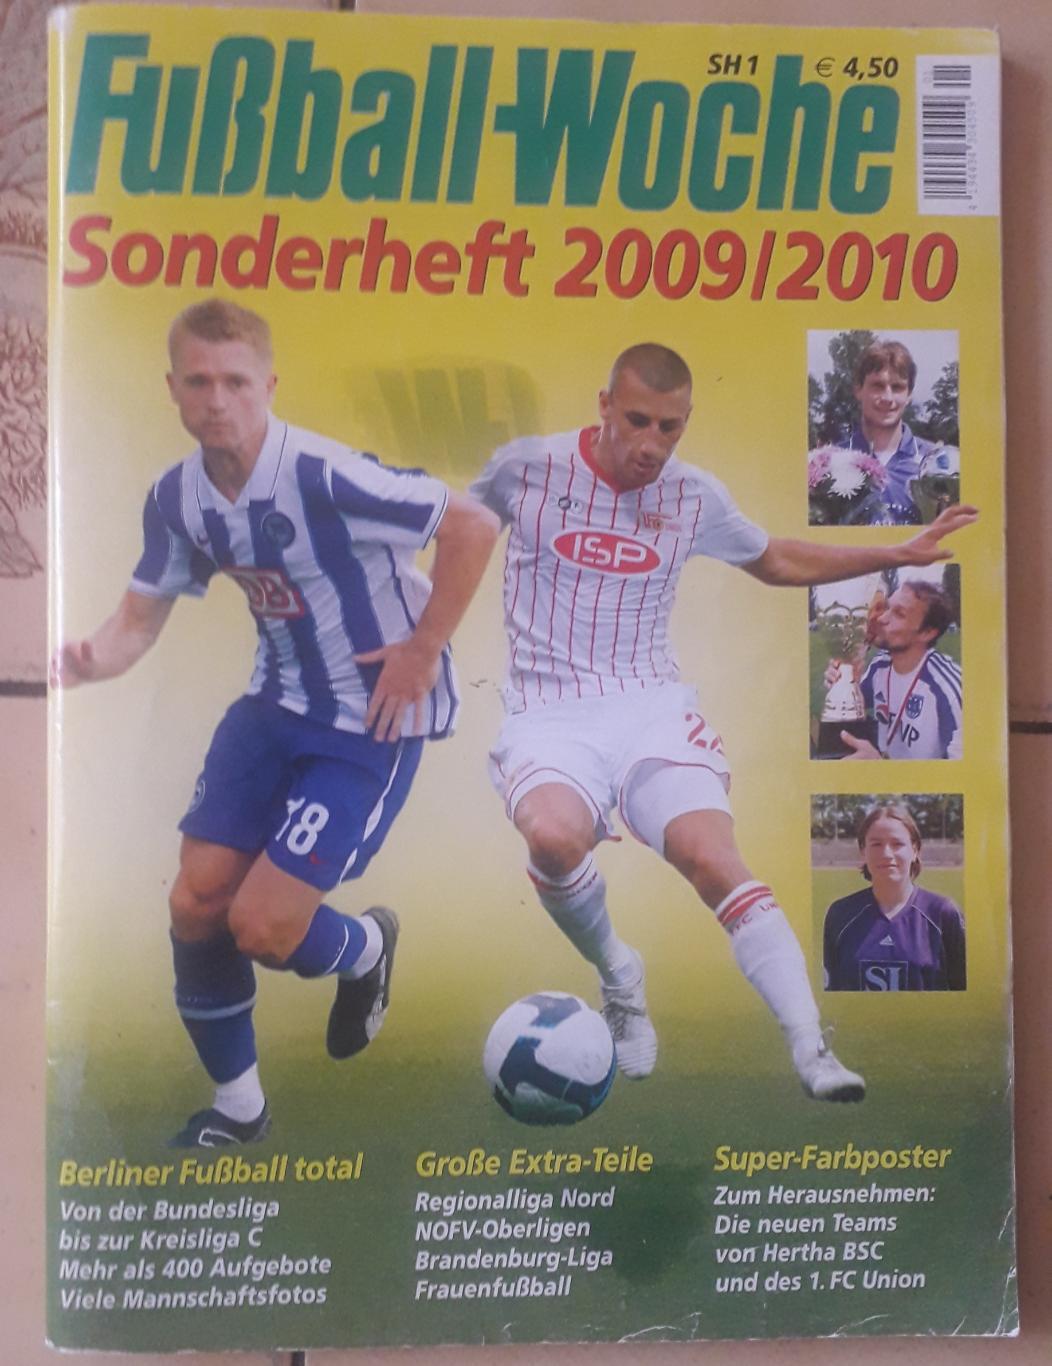 Fussball Woche 2009/10.